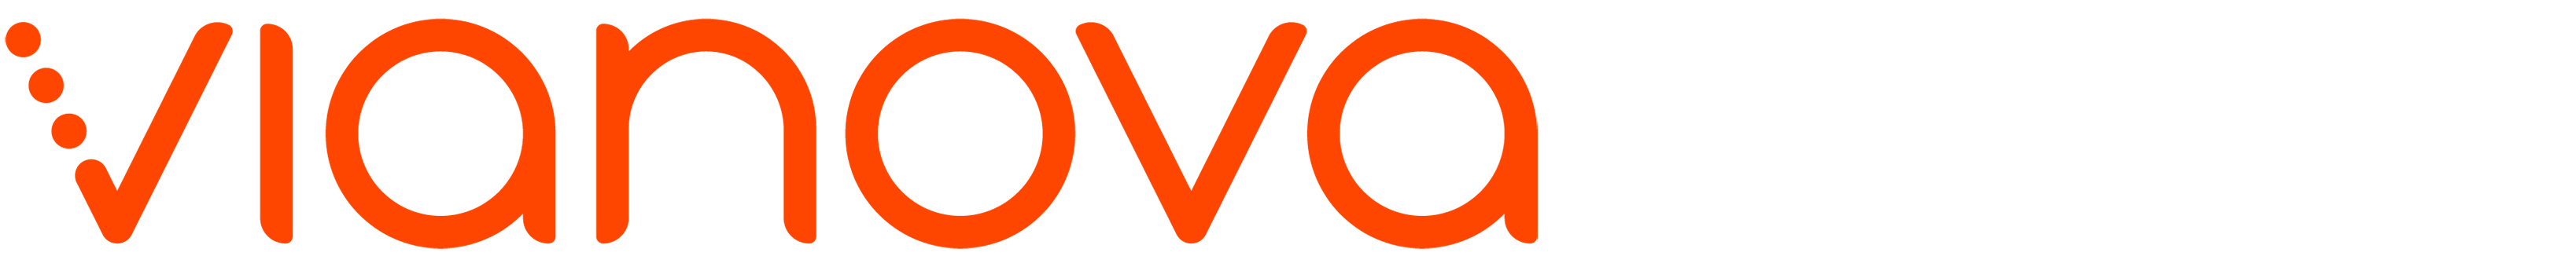 logo vianova hubspot